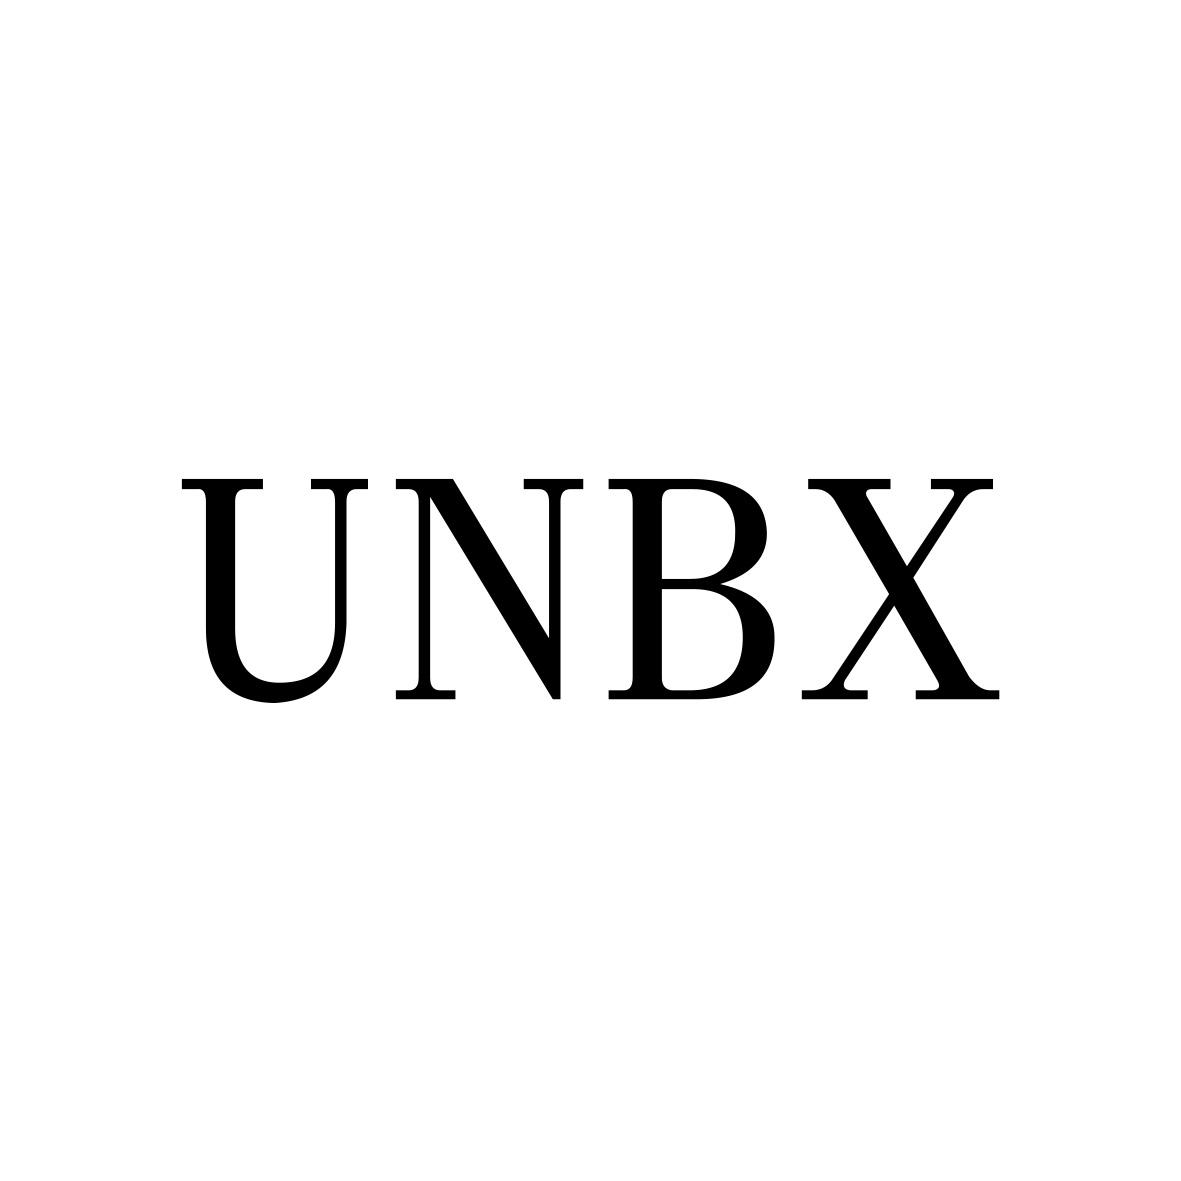 UNBX